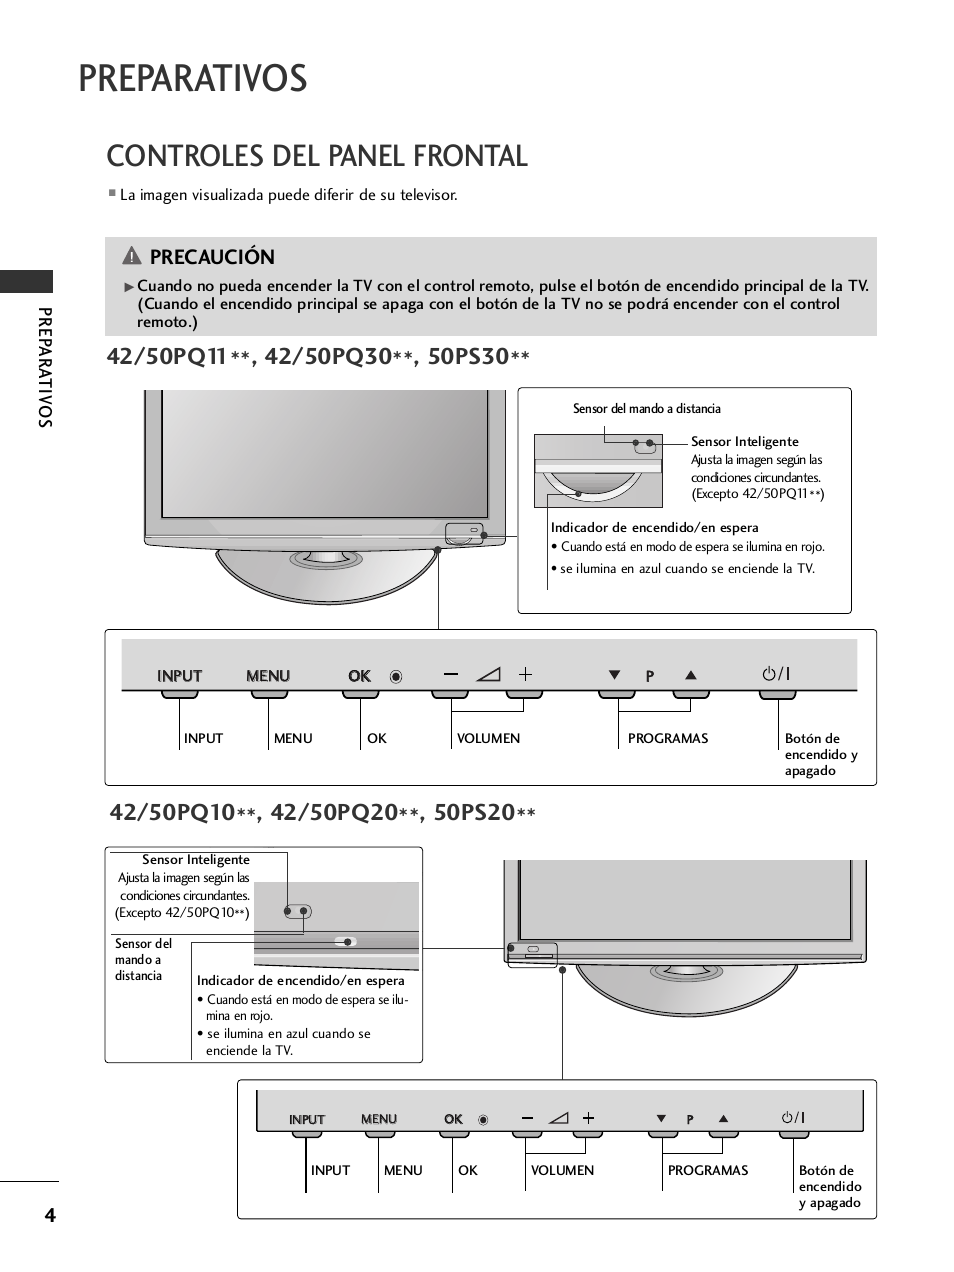 Preparativos, Controles del panel frontal, Precaución | Prep ar a tiv os | LG 50PQ1000 Manual del usuario | Página 6 / 124